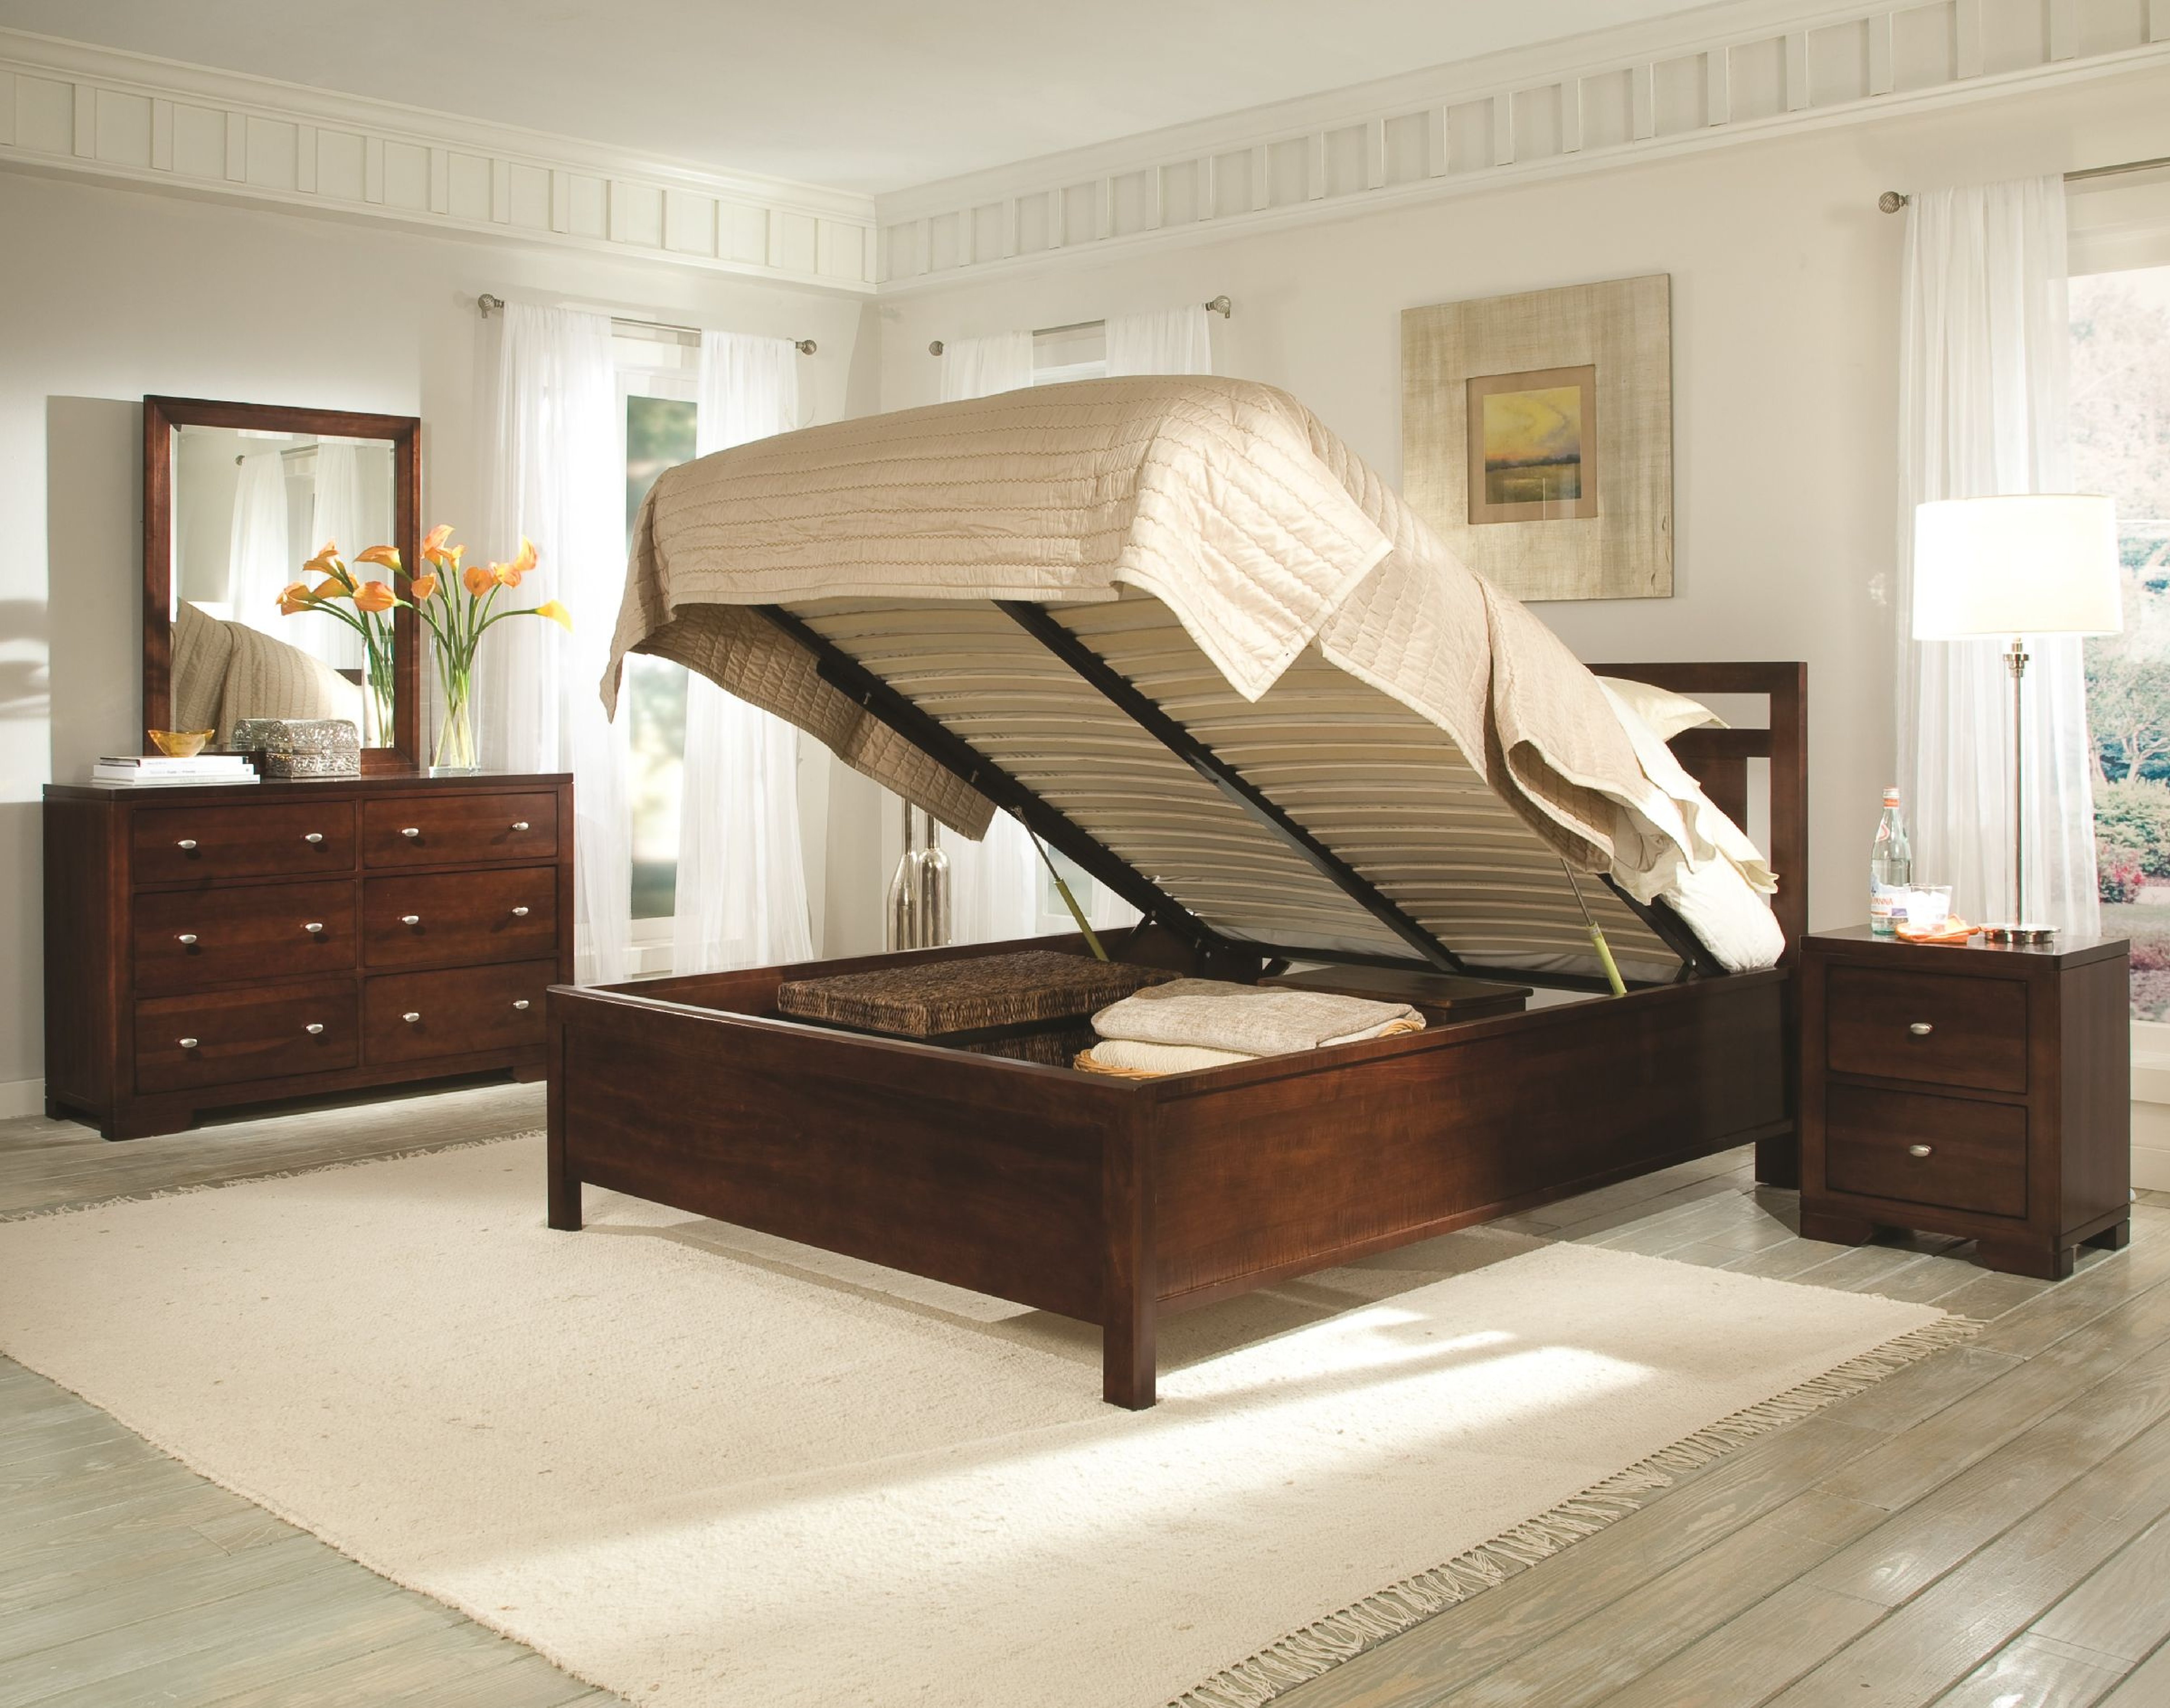 Durham Furniture Symmetry Lift storage bed